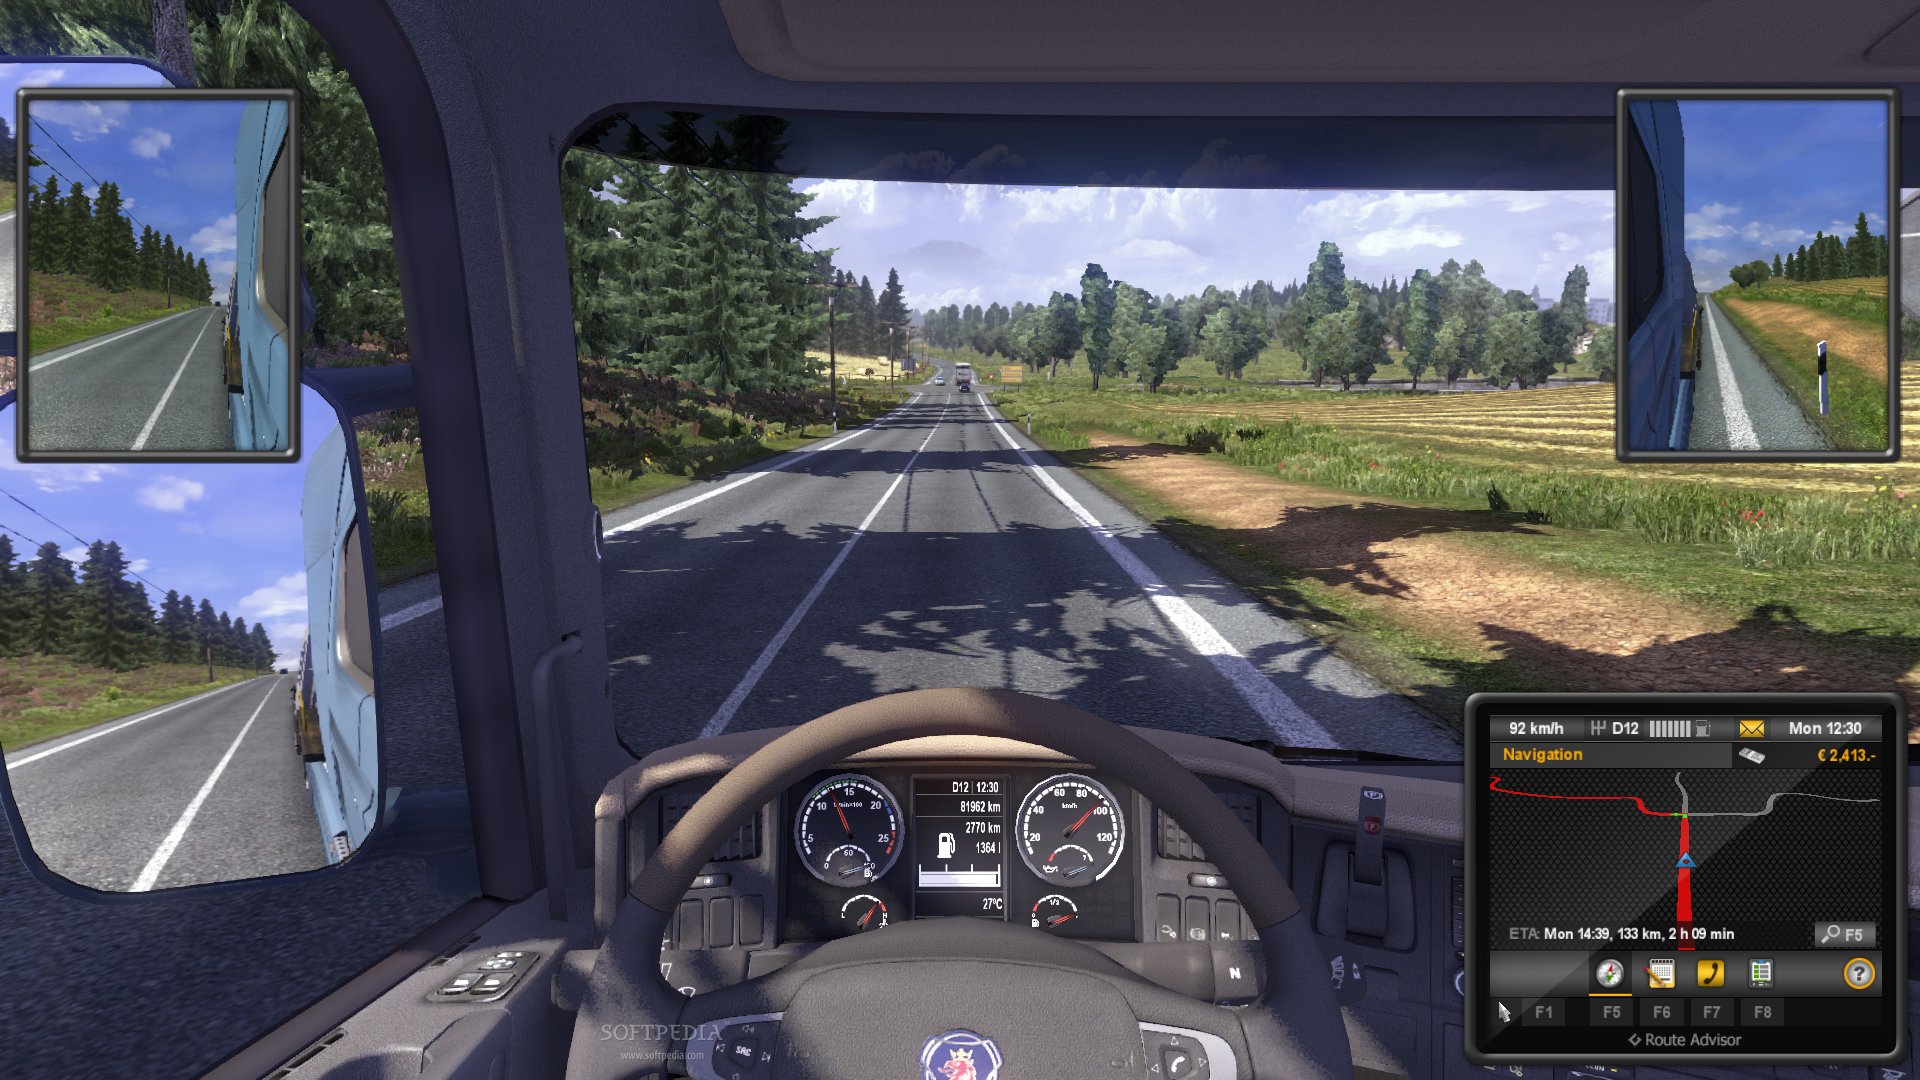 Euro truck simulator 2 download full version free pc imyfone fixppo download for pc